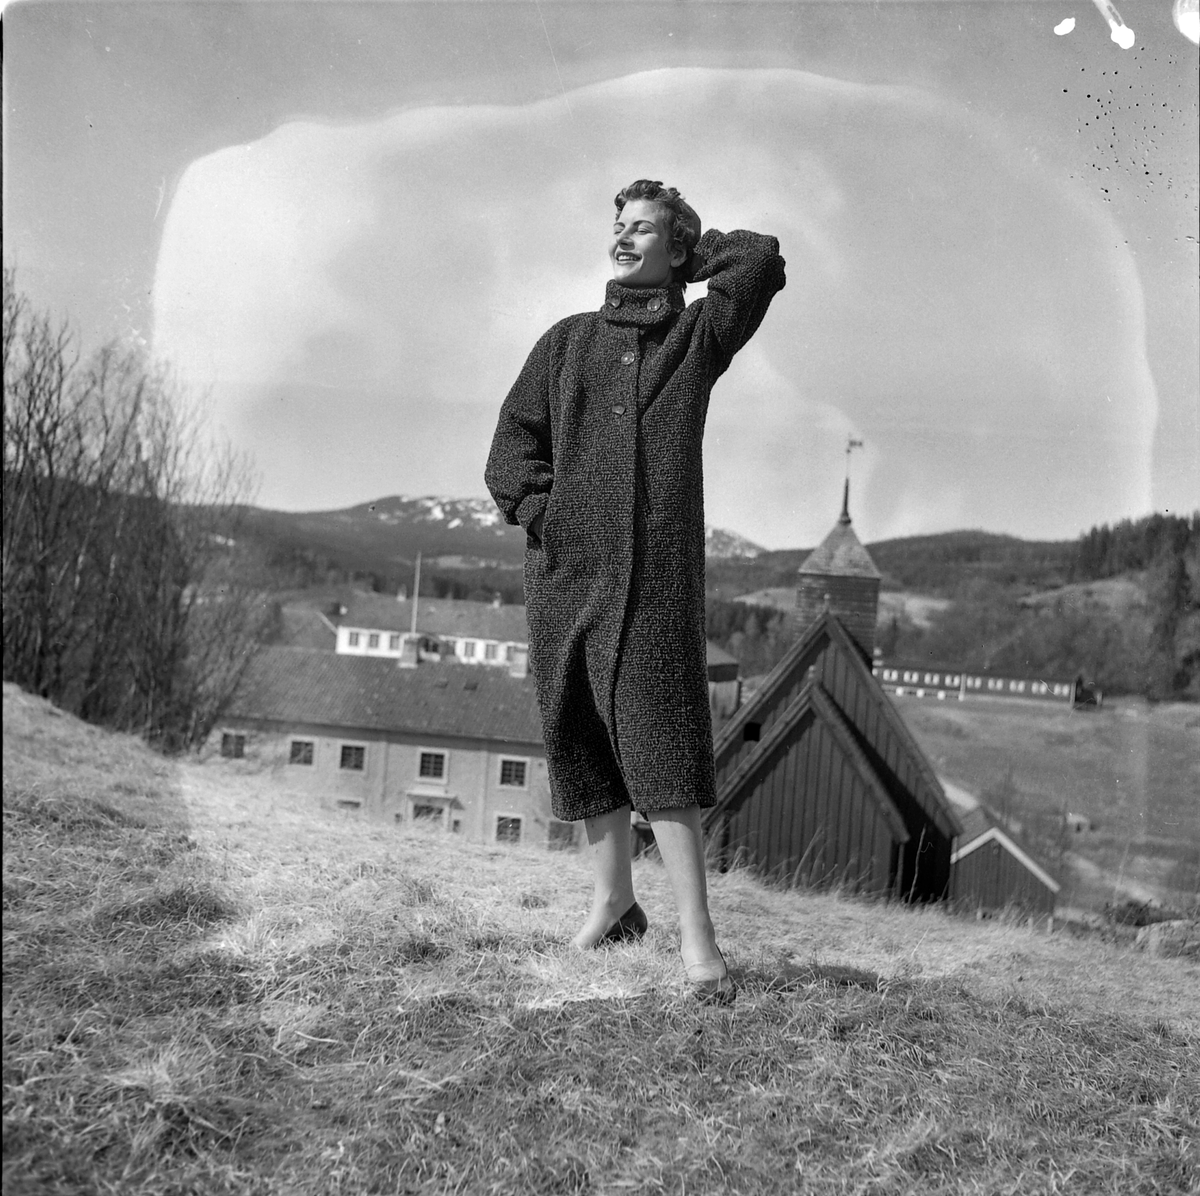 Tekstilutstillingen i Trondheim, 1954